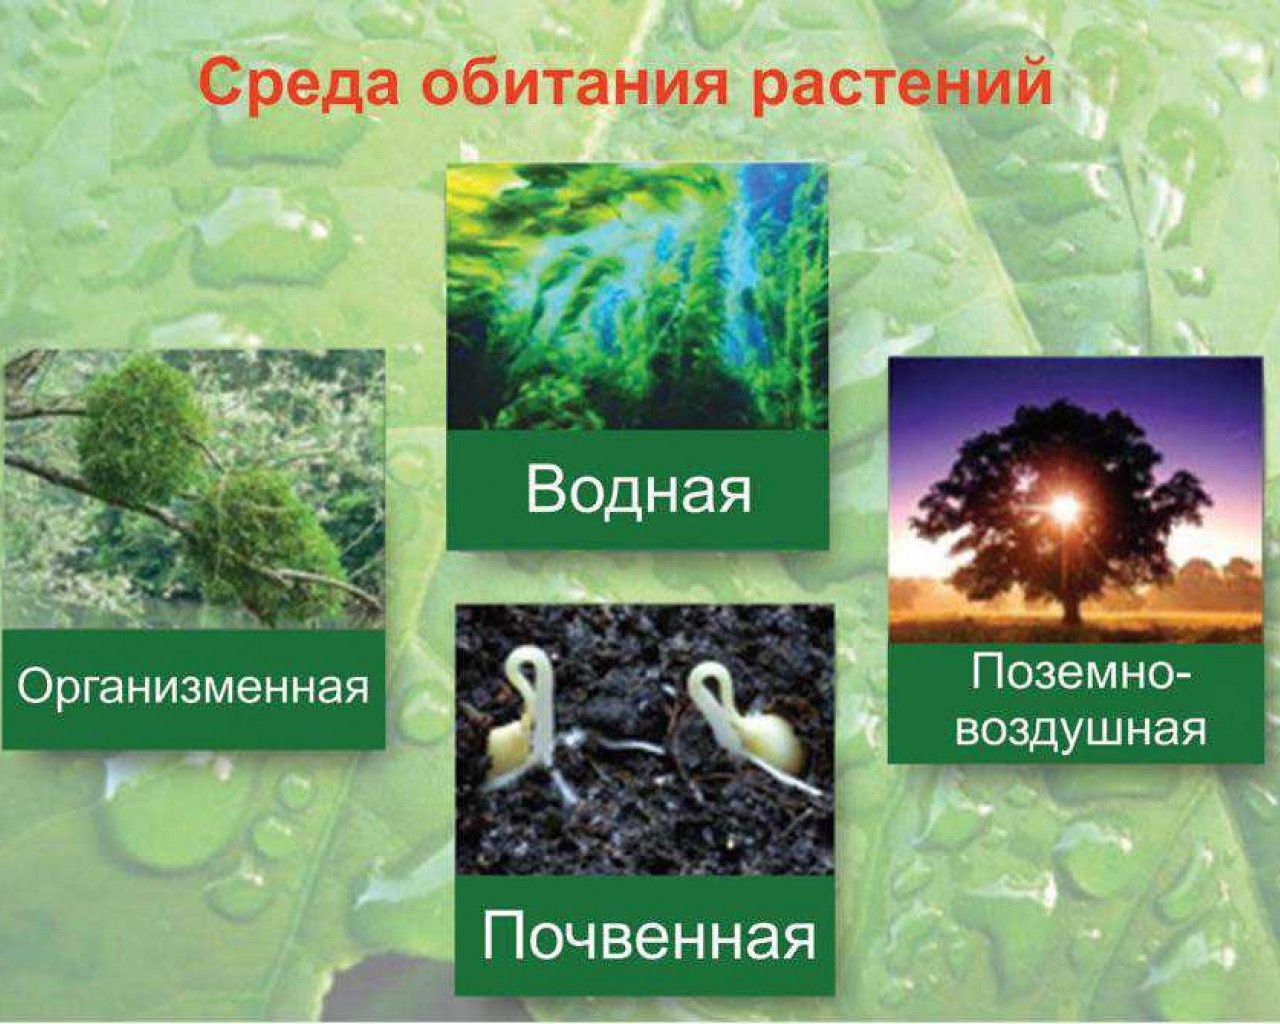 Среда обитания растений. Условия обитания растений. Условия среды обитания растений. Растения разных сред обитания. Фукус водная или наземно воздушная